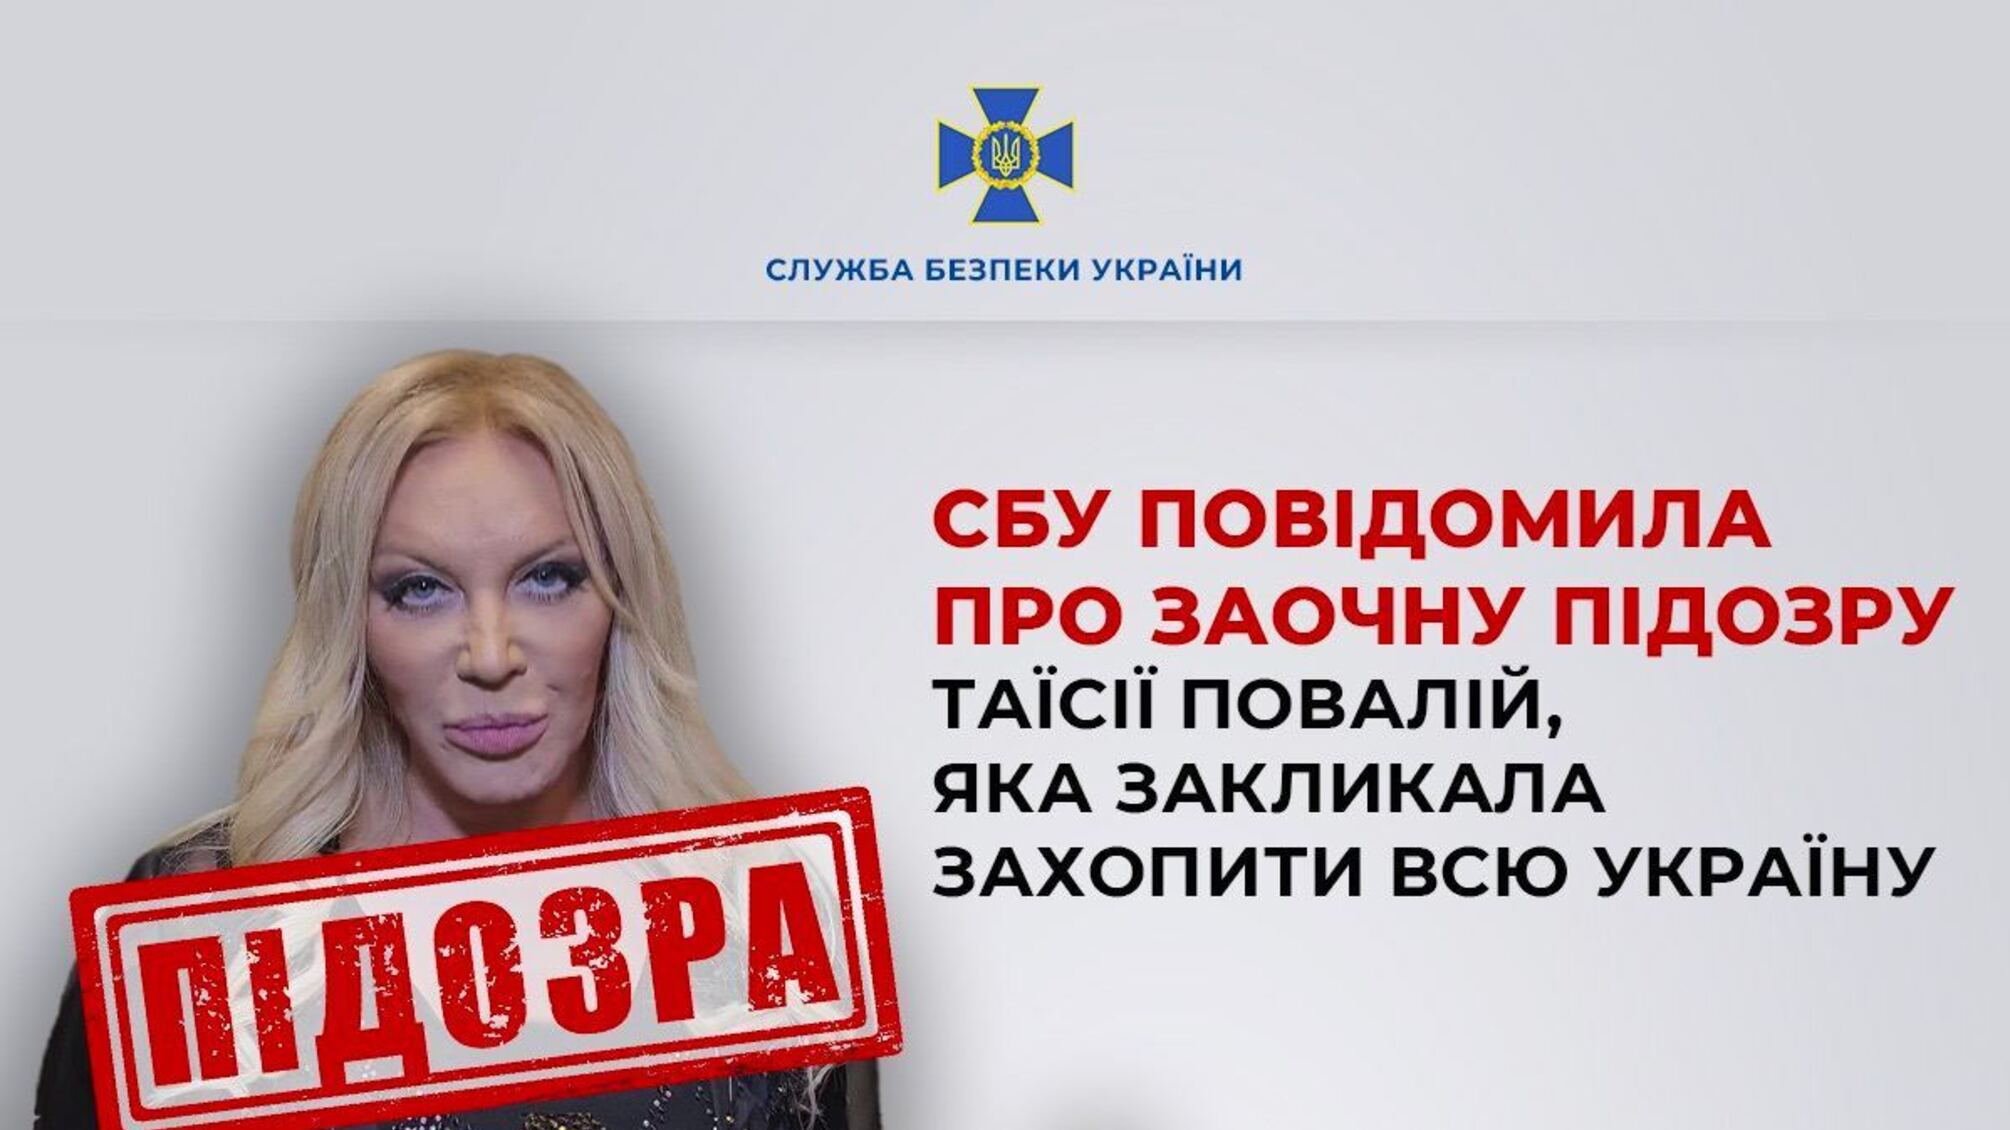 Призвала захватить Украину: Повалий получила подозрение